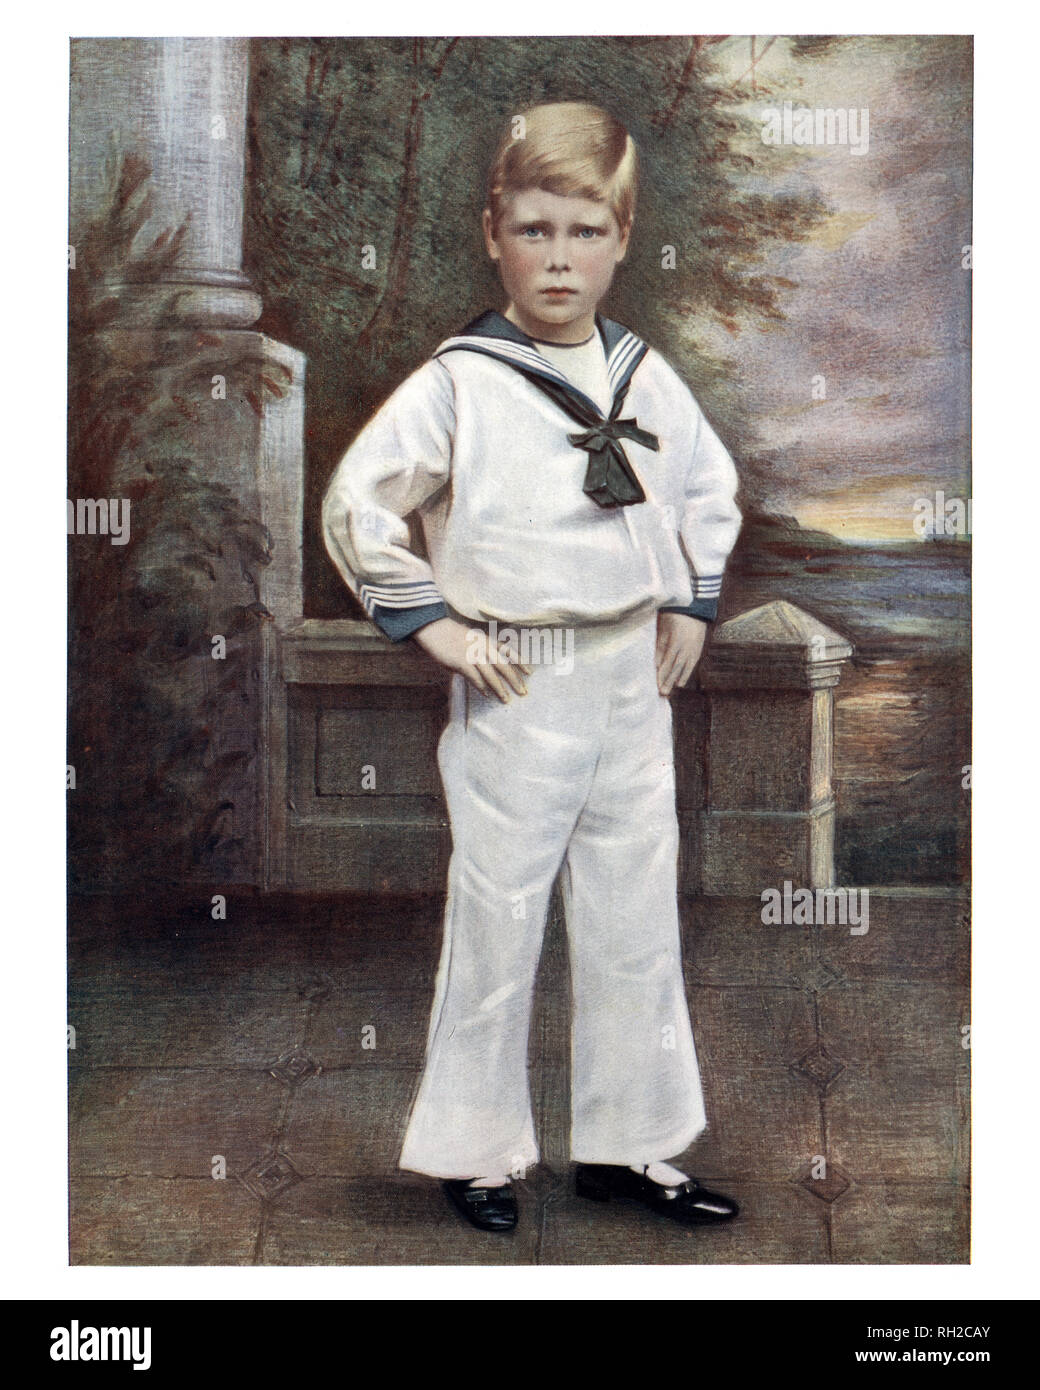 Prince Edward di York, più tardi re Edward VIII, come un giovane ragazzo vestito con una tuta del marinaio. Era il Re del Regno Unito e i domini dell'impero britannico, e l'imperatore di India, dal 20 gennaio 1936 fino alla sua abdicazione il 11 dicembre dello stesso anno, dopo di che egli divenne duca di Windsor. Foto Stock